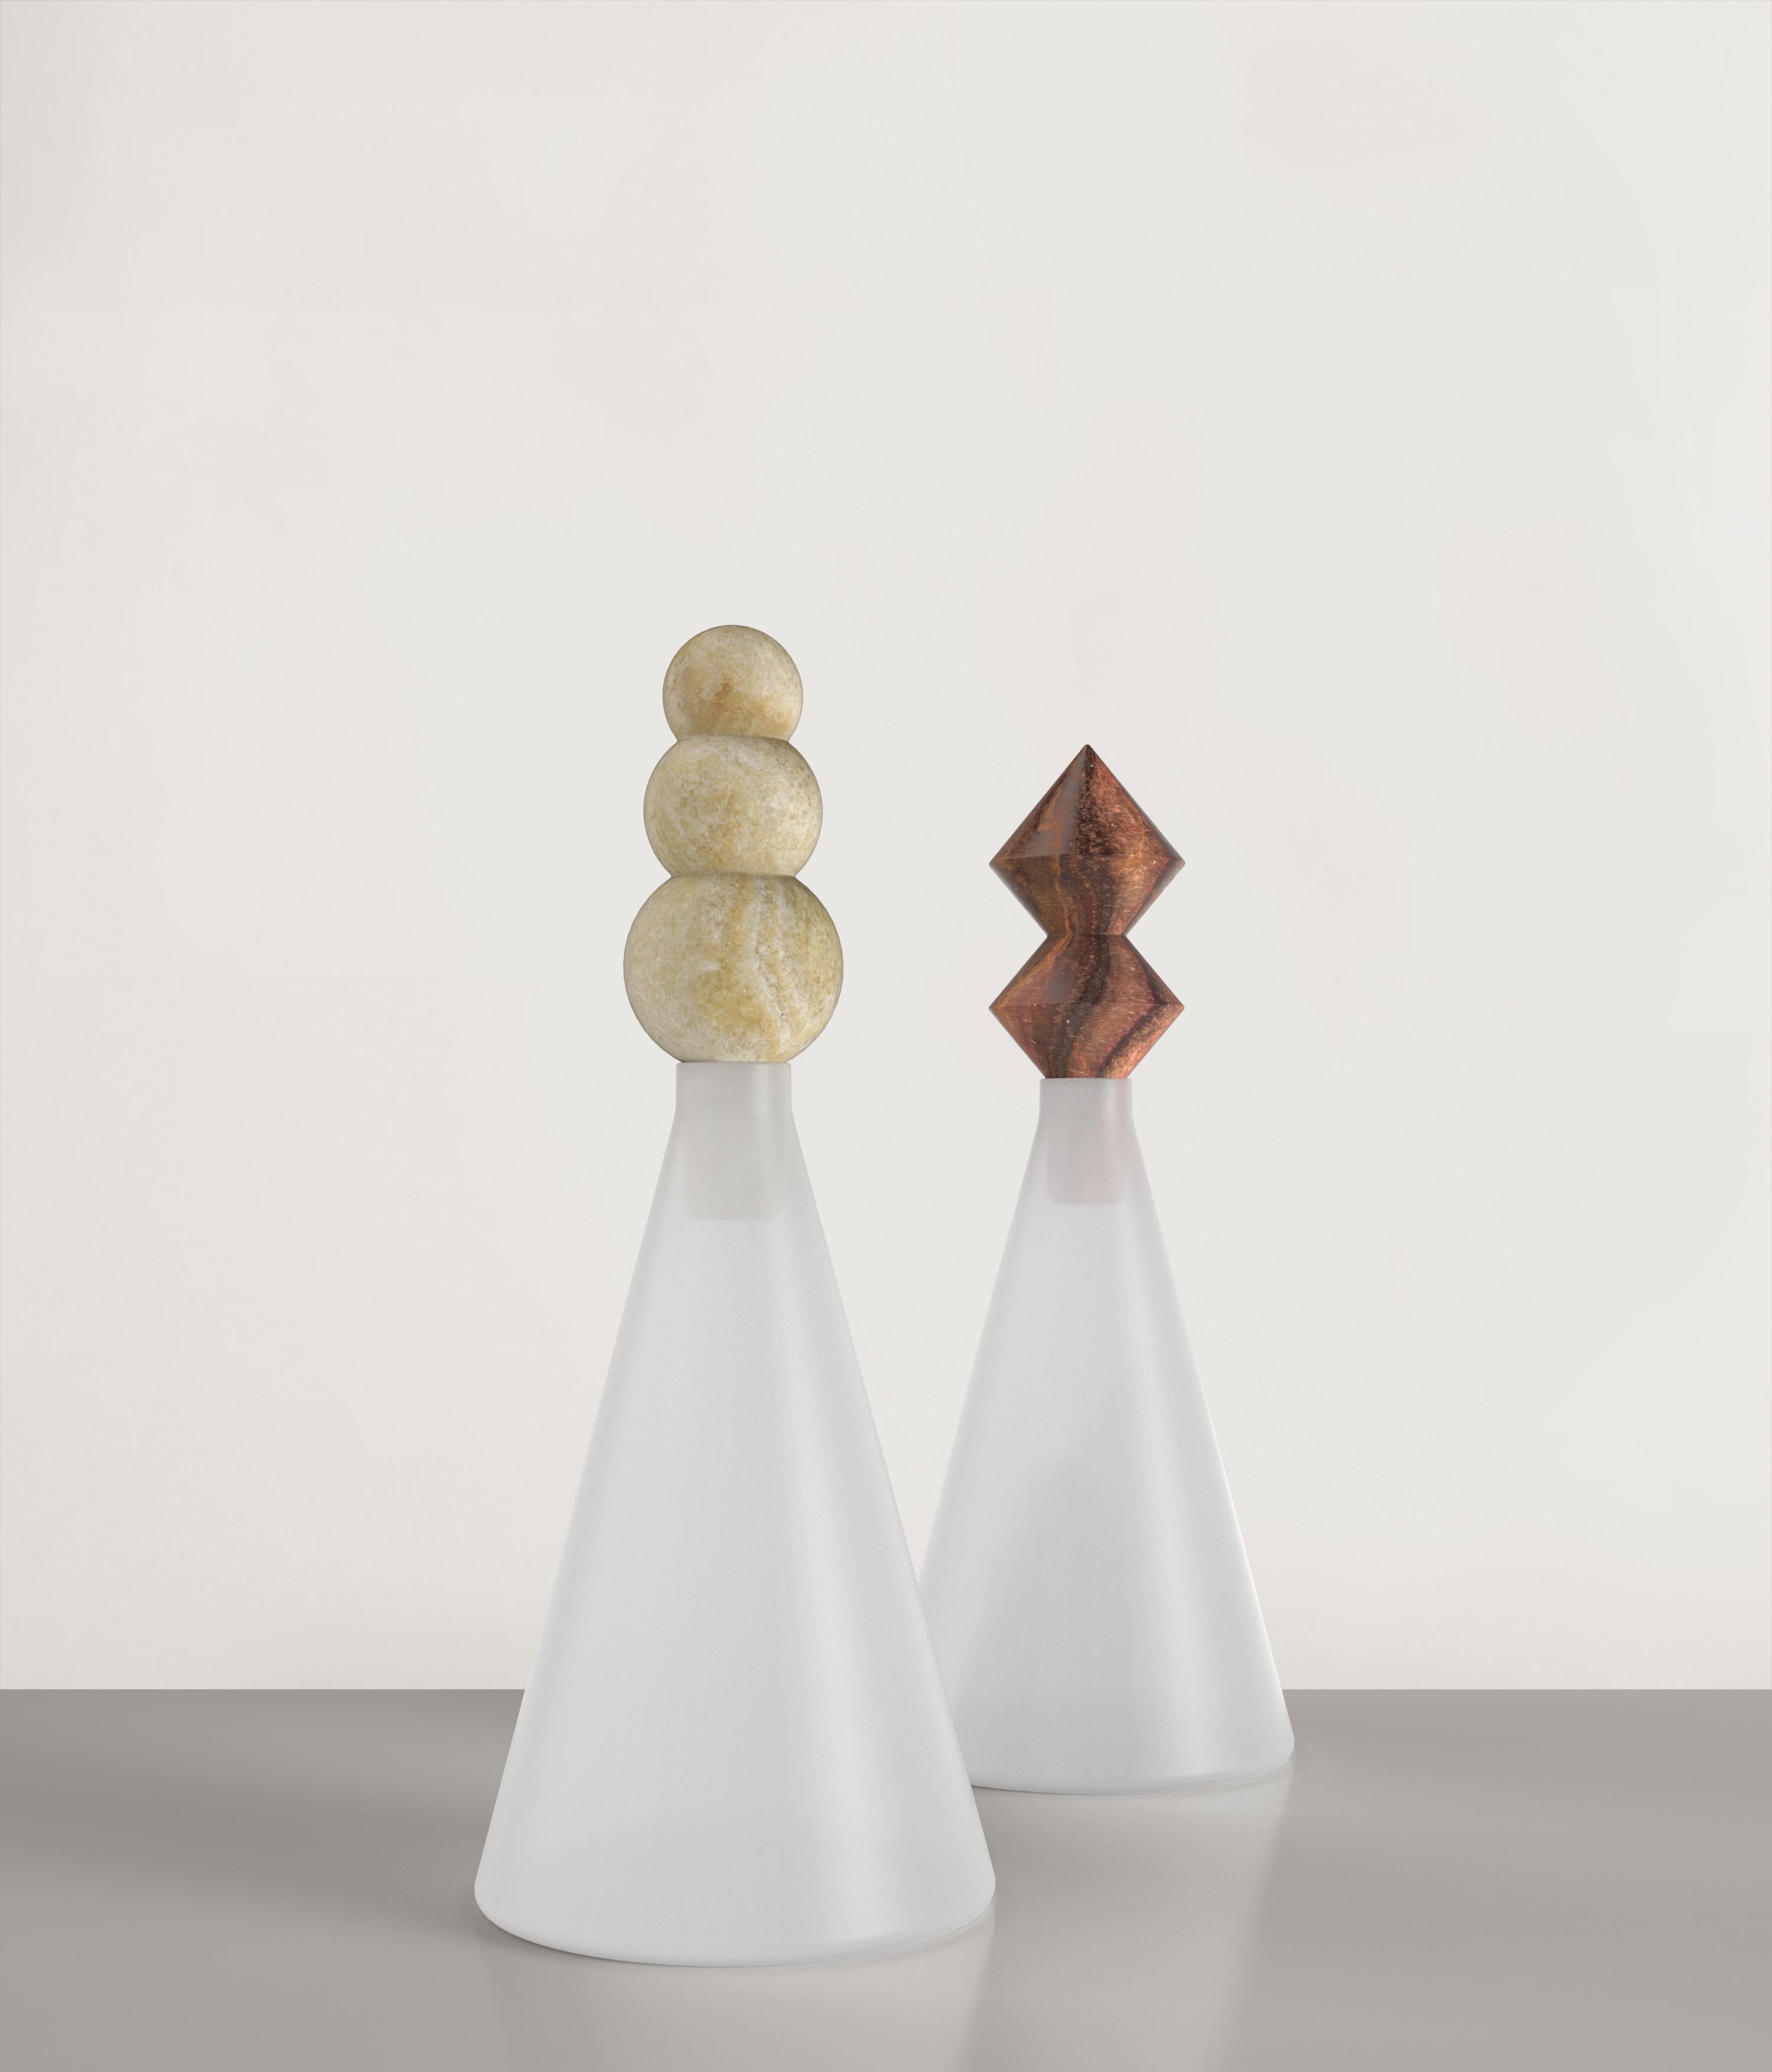 Stone Contemporary Limited Edition White Glass Bottle, Kite V1 by Edizione Limitata